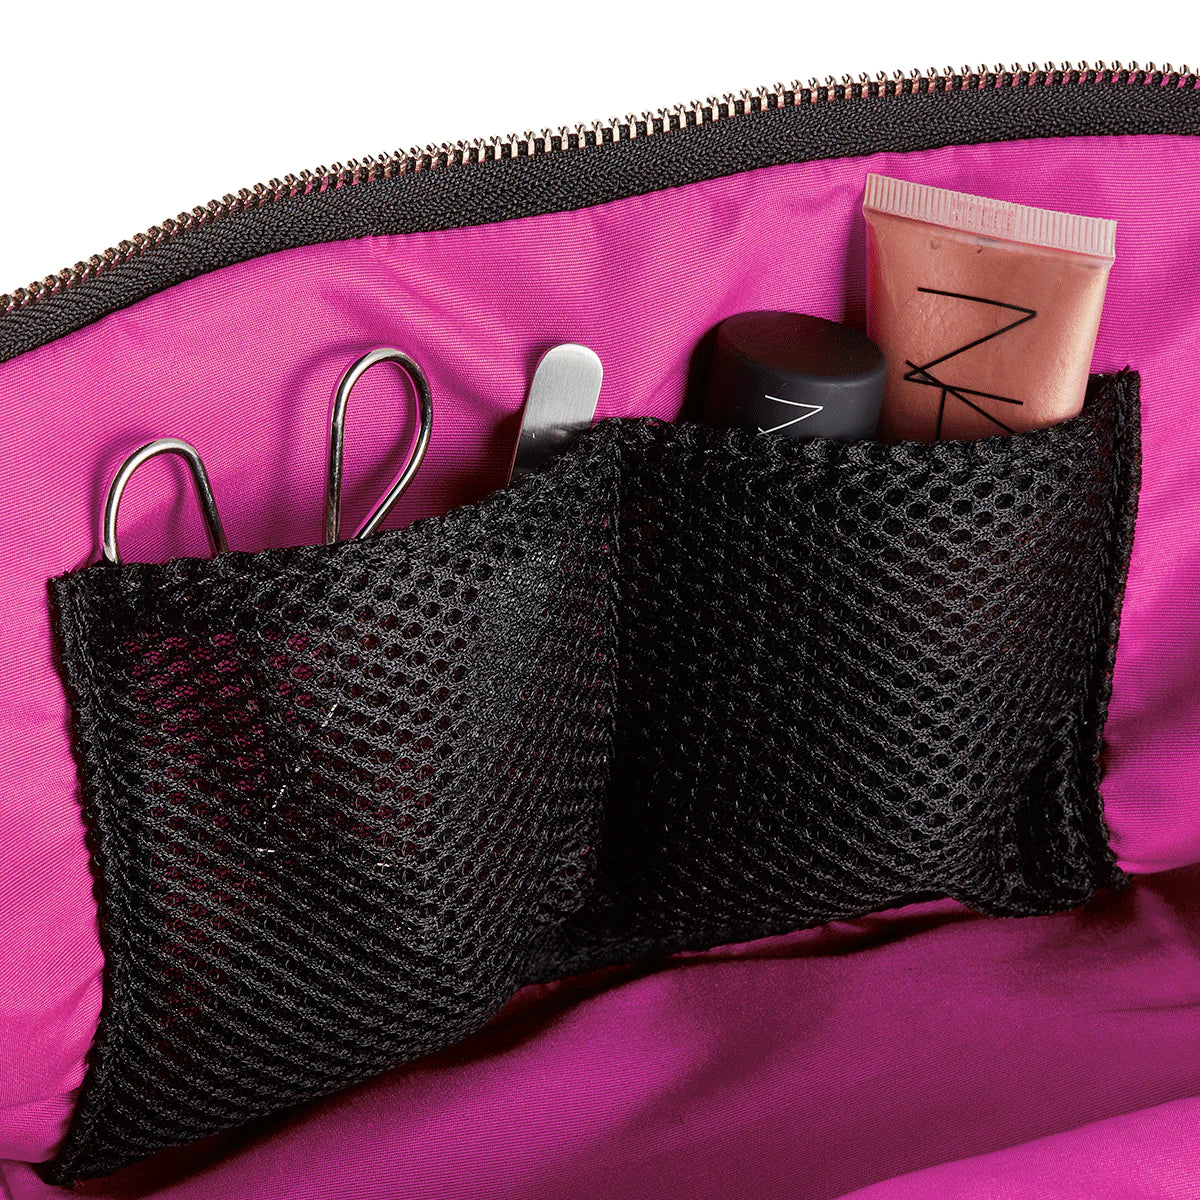 KUSSHI Signature Makeup Bag Navy Fabric with Pink Interior